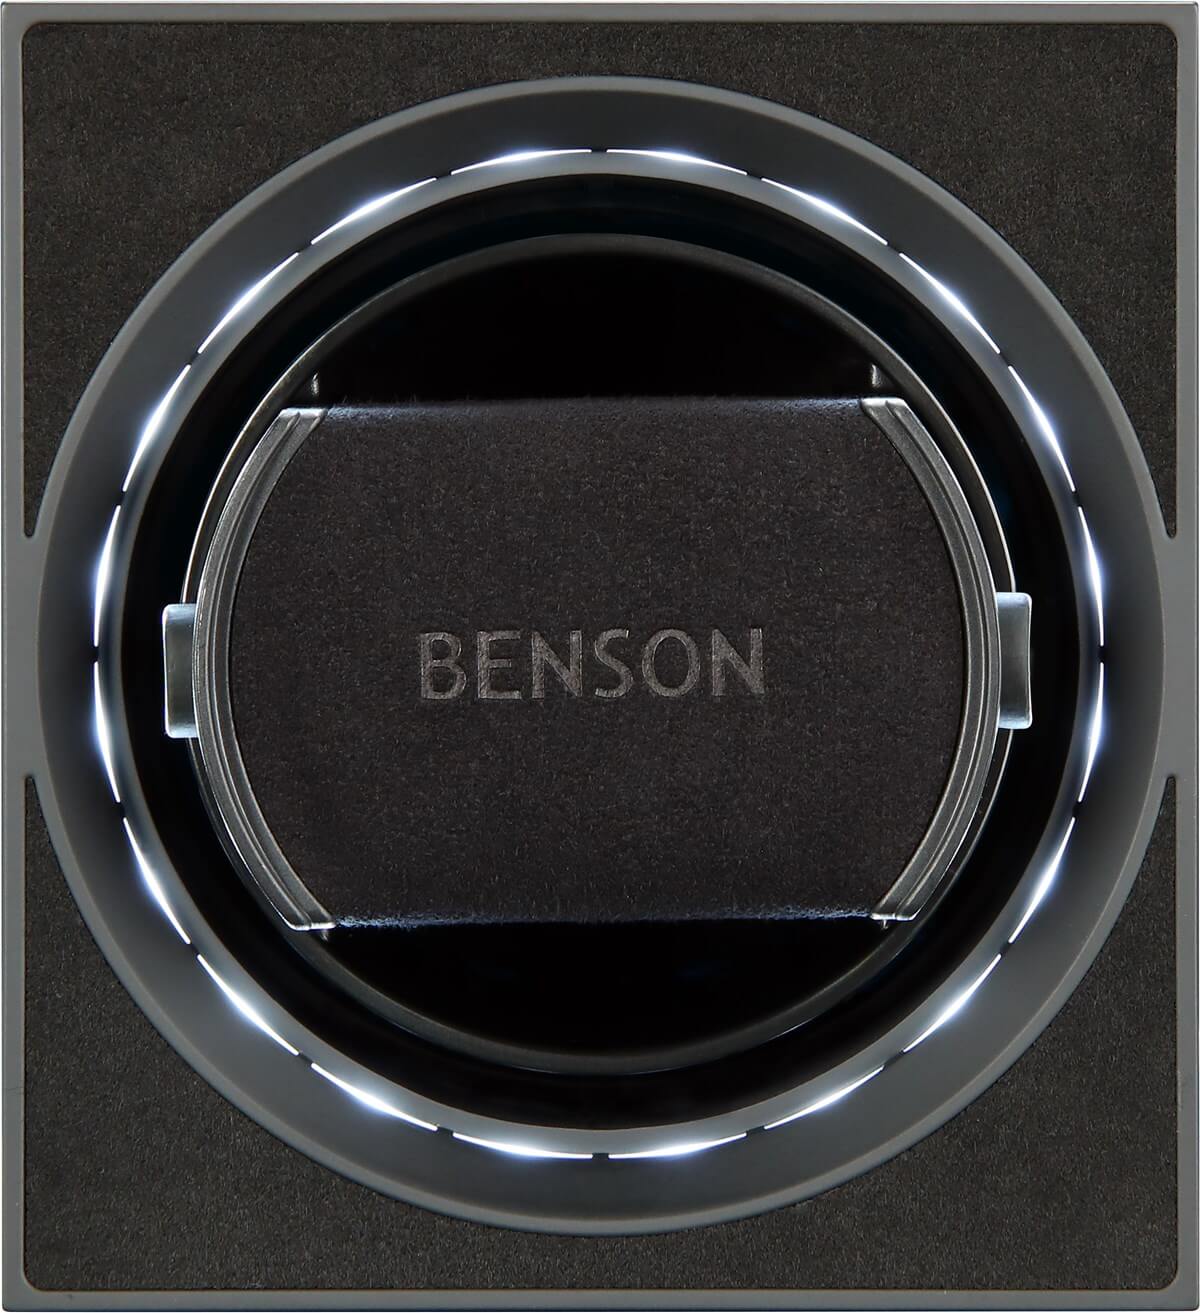 Benson Compact Aluminium 1 Black